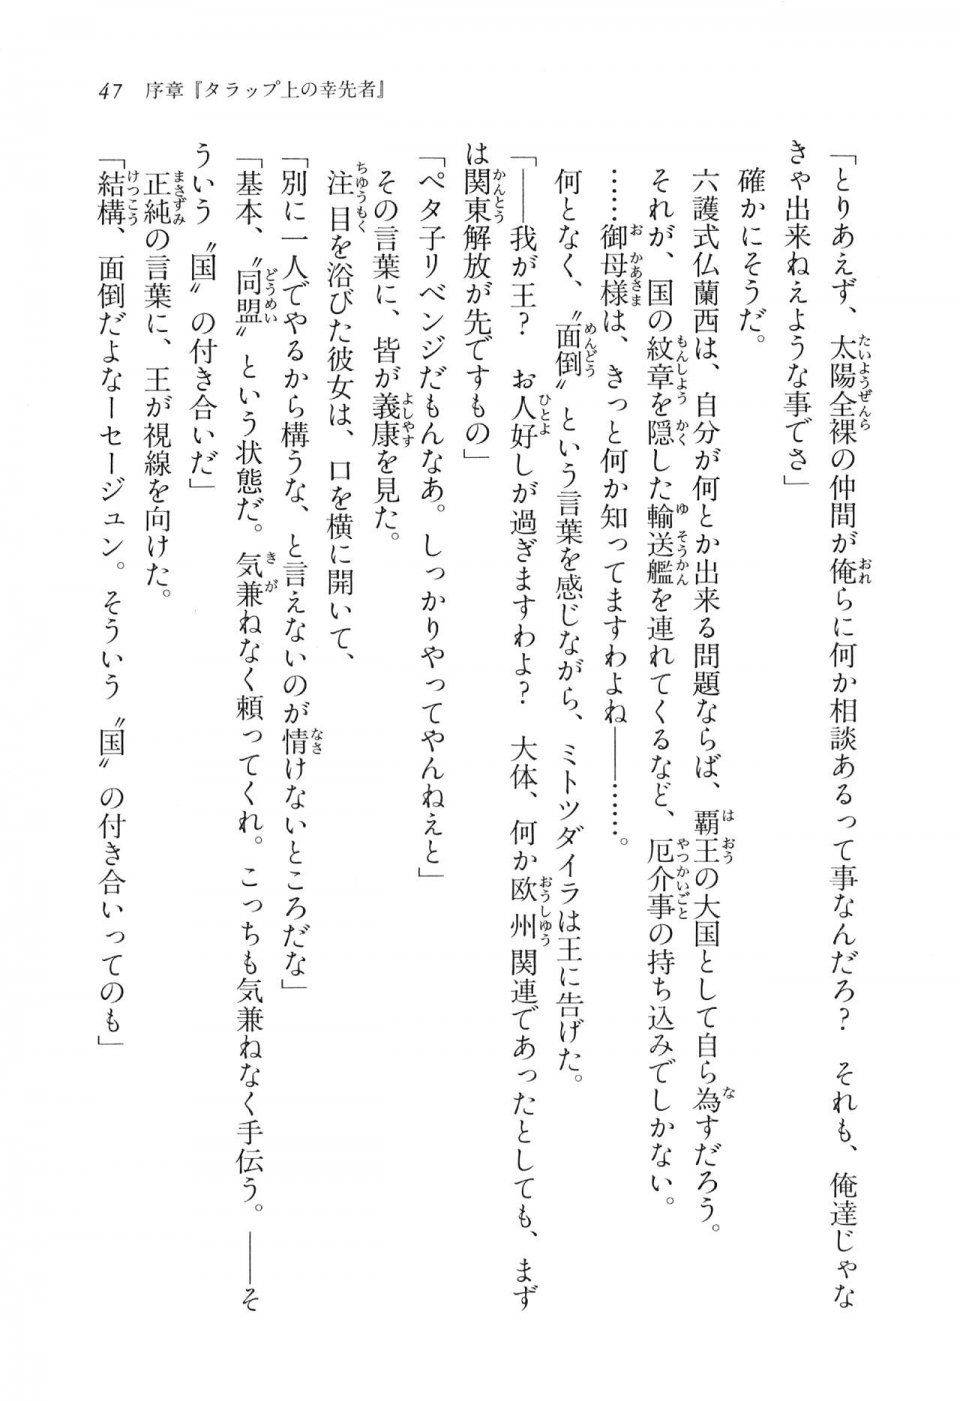 Kyoukai Senjou no Horizon LN Vol 16(7A) - Photo #47